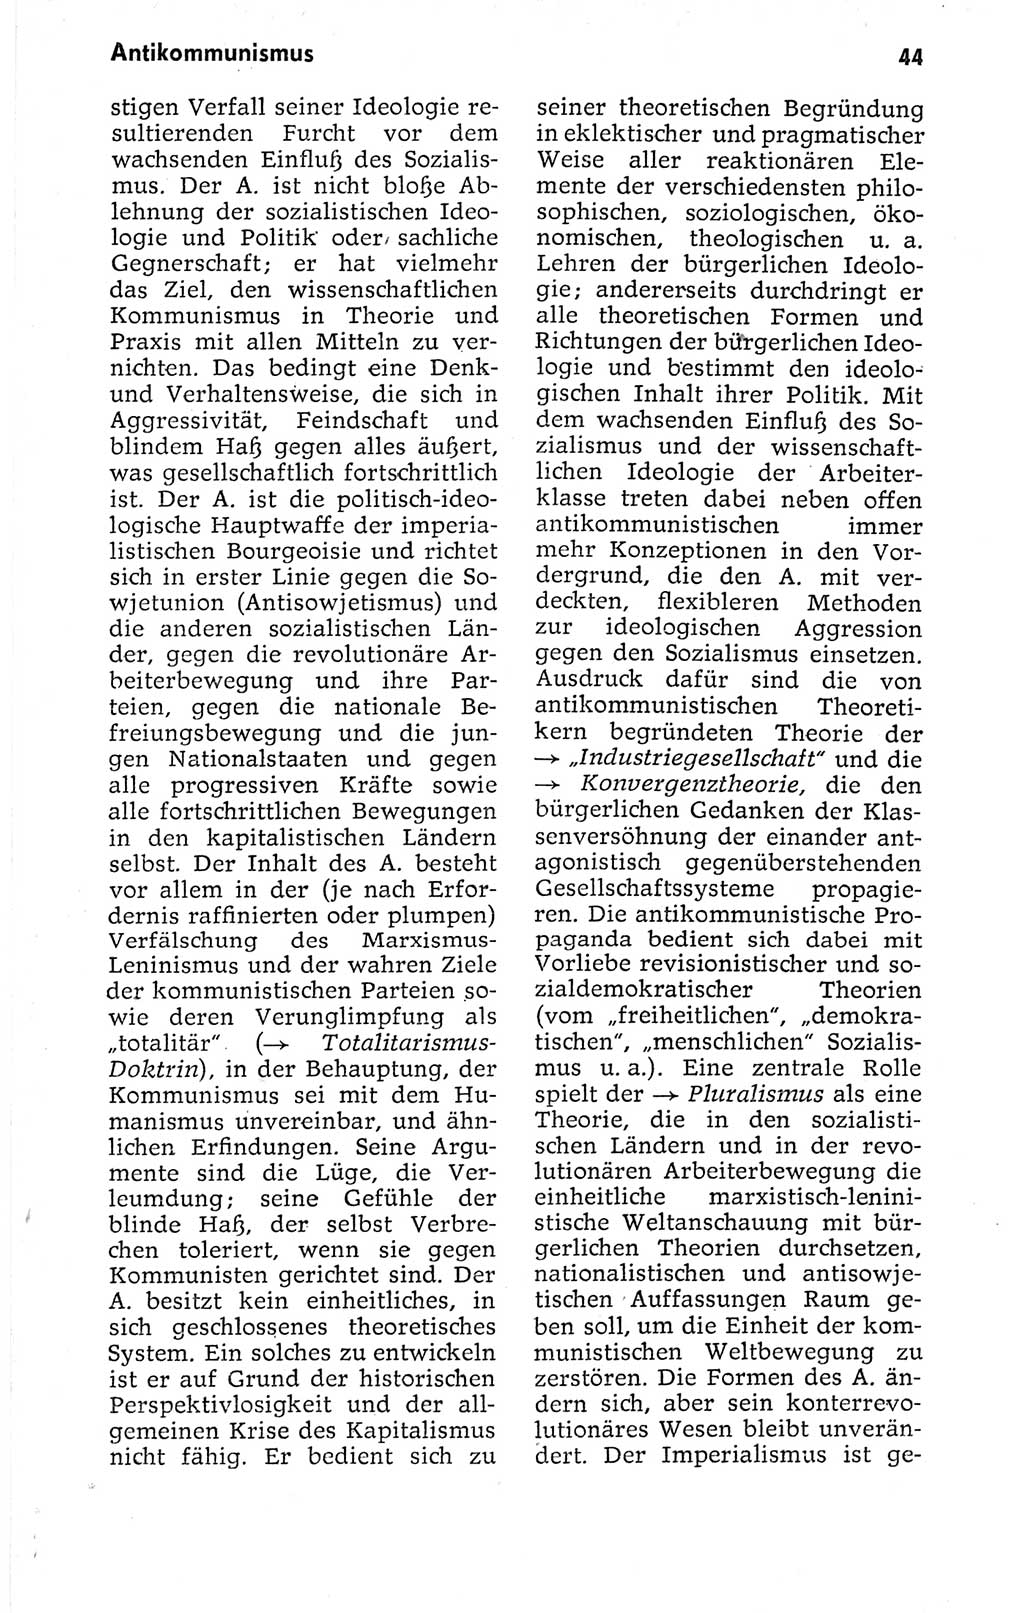 Kleines politisches Wörterbuch [Deutsche Demokratische Republik (DDR)] 1973, Seite 44 (Kl. pol. Wb. DDR 1973, S. 44)